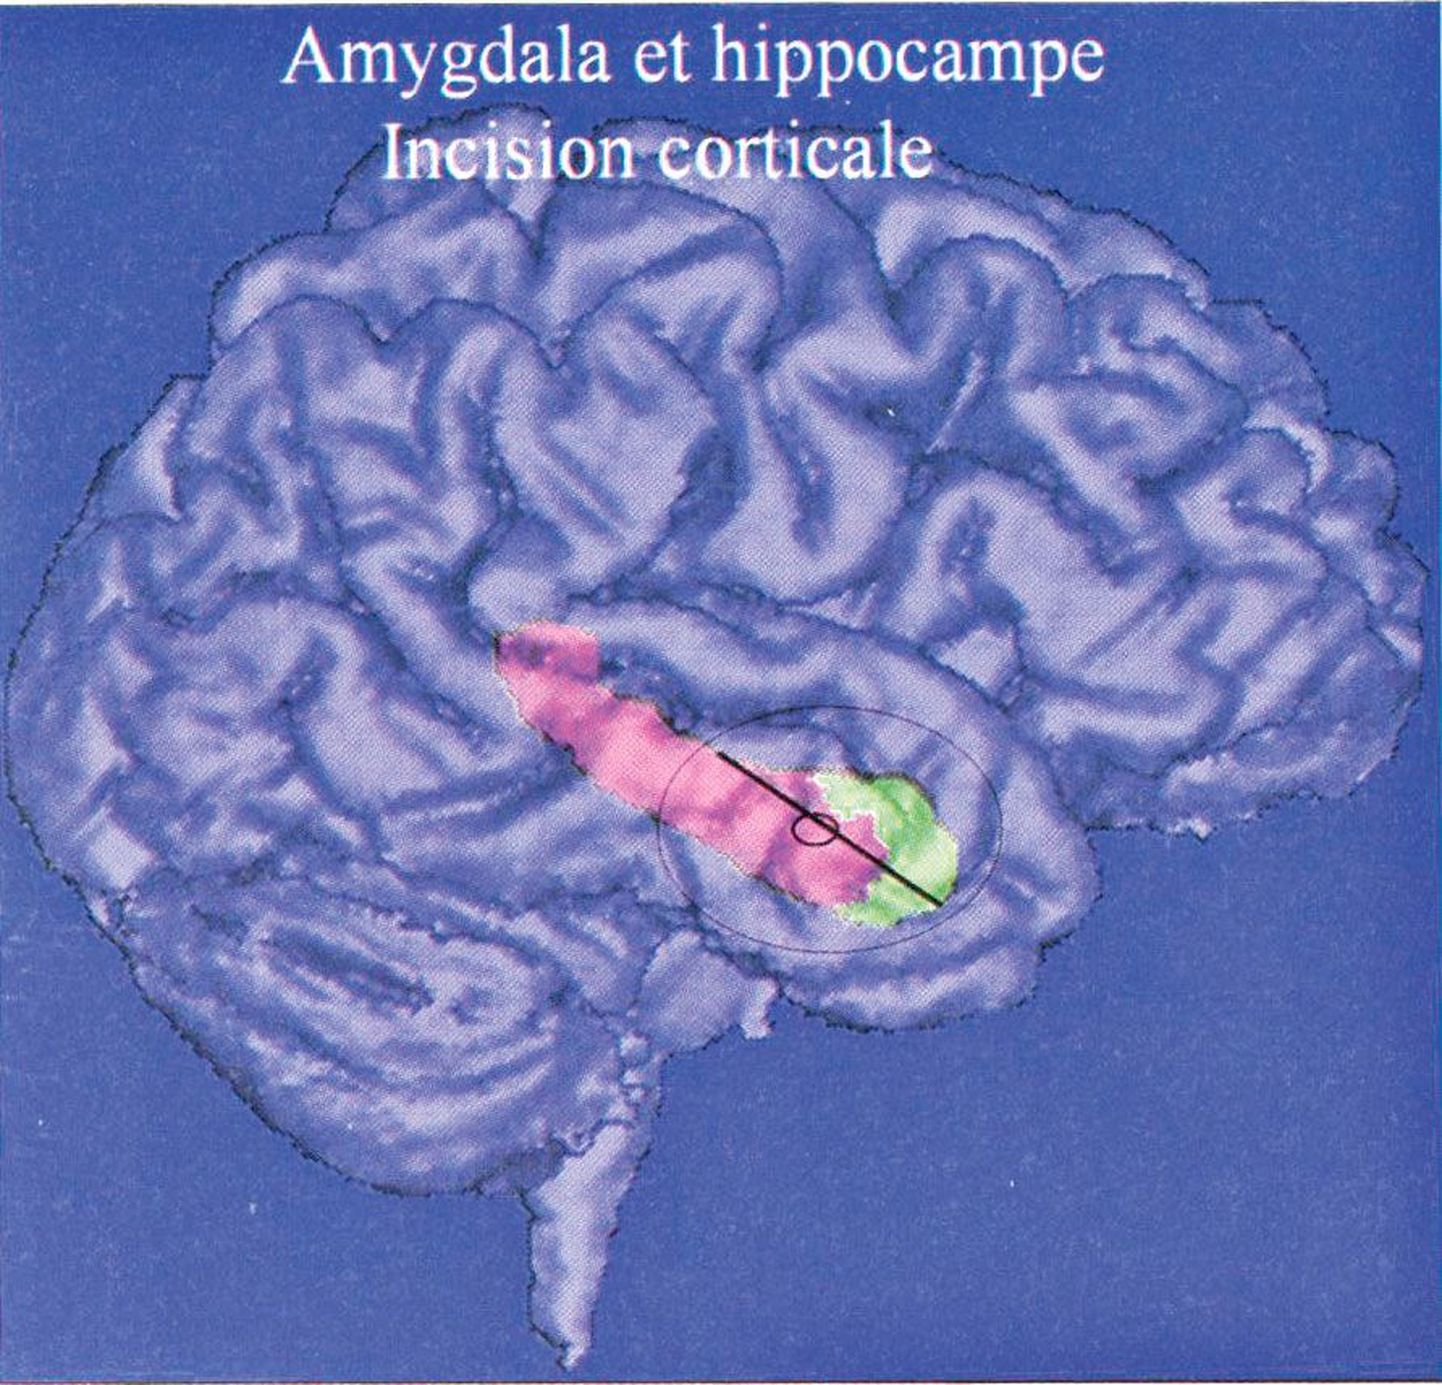 Aju oimusagara sisemuses olev hipokampus (roosa) ja mandeltuum (roheline), millest osa eemaldades on võimalik patsient epileptilistest hoogudest vabastada.